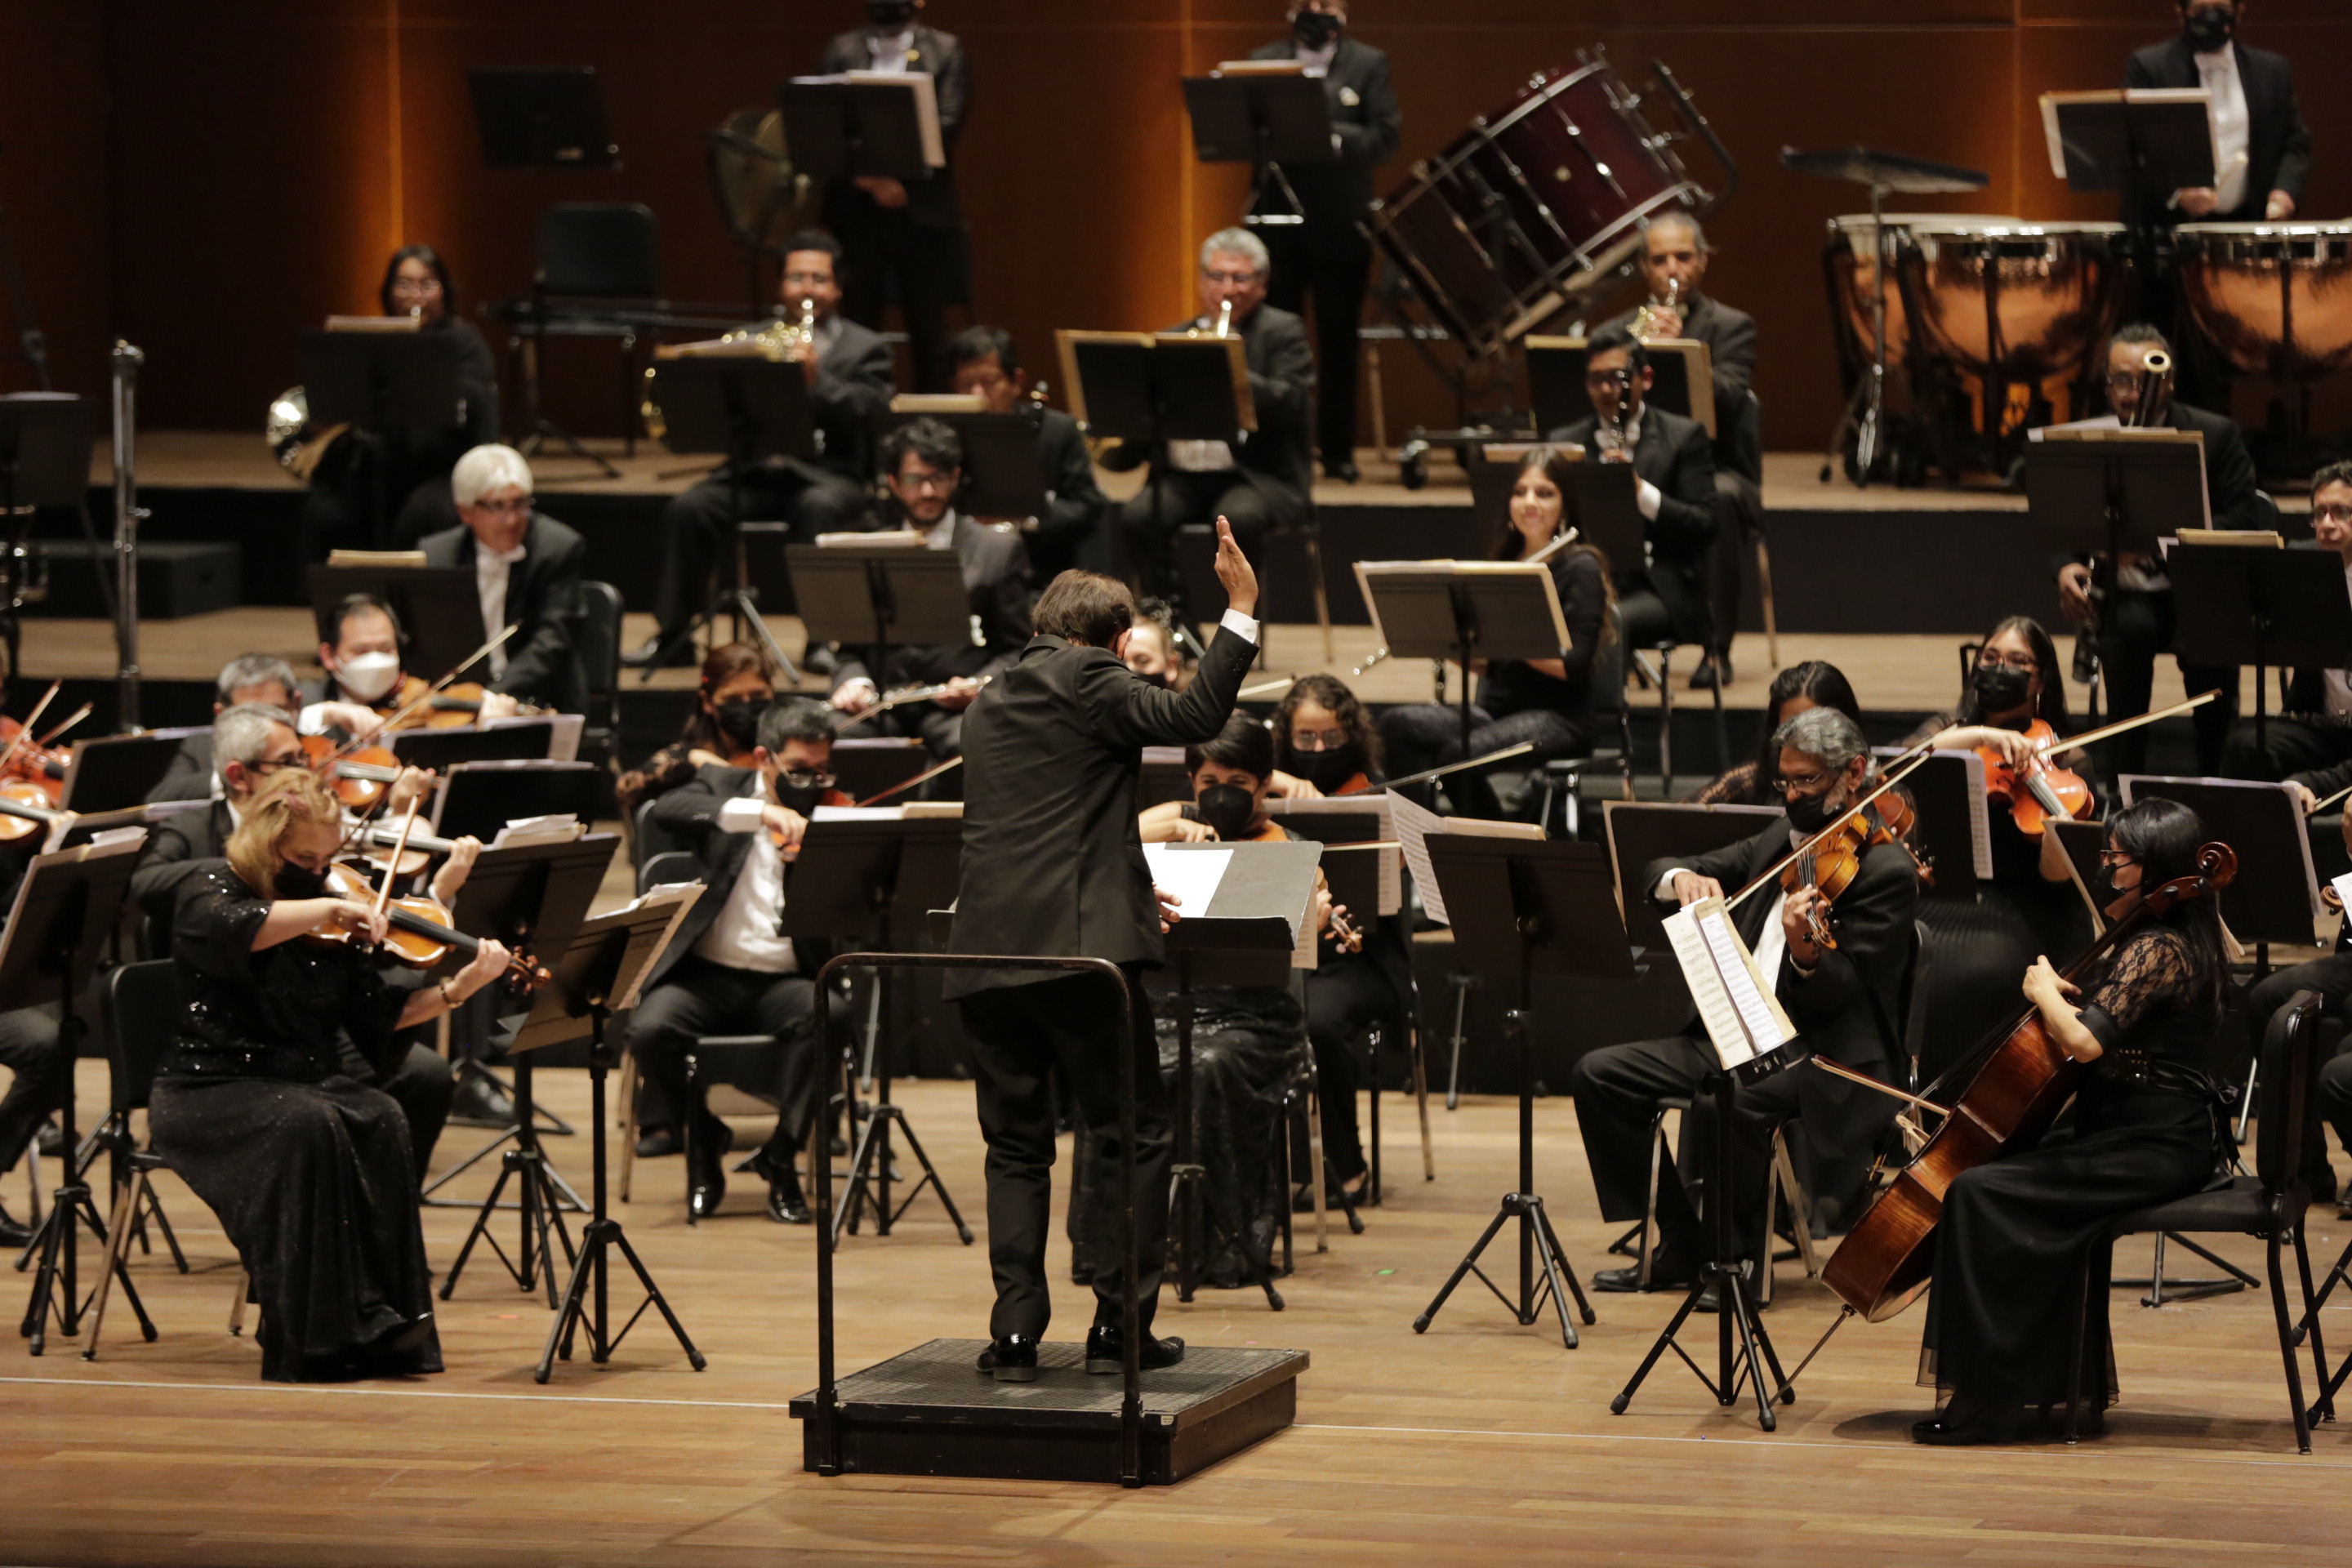 Orquesta Sinfónica Nacional del Perú presentó el concierto “Valses de Strauss y más” en el Gran Teatro Nacional